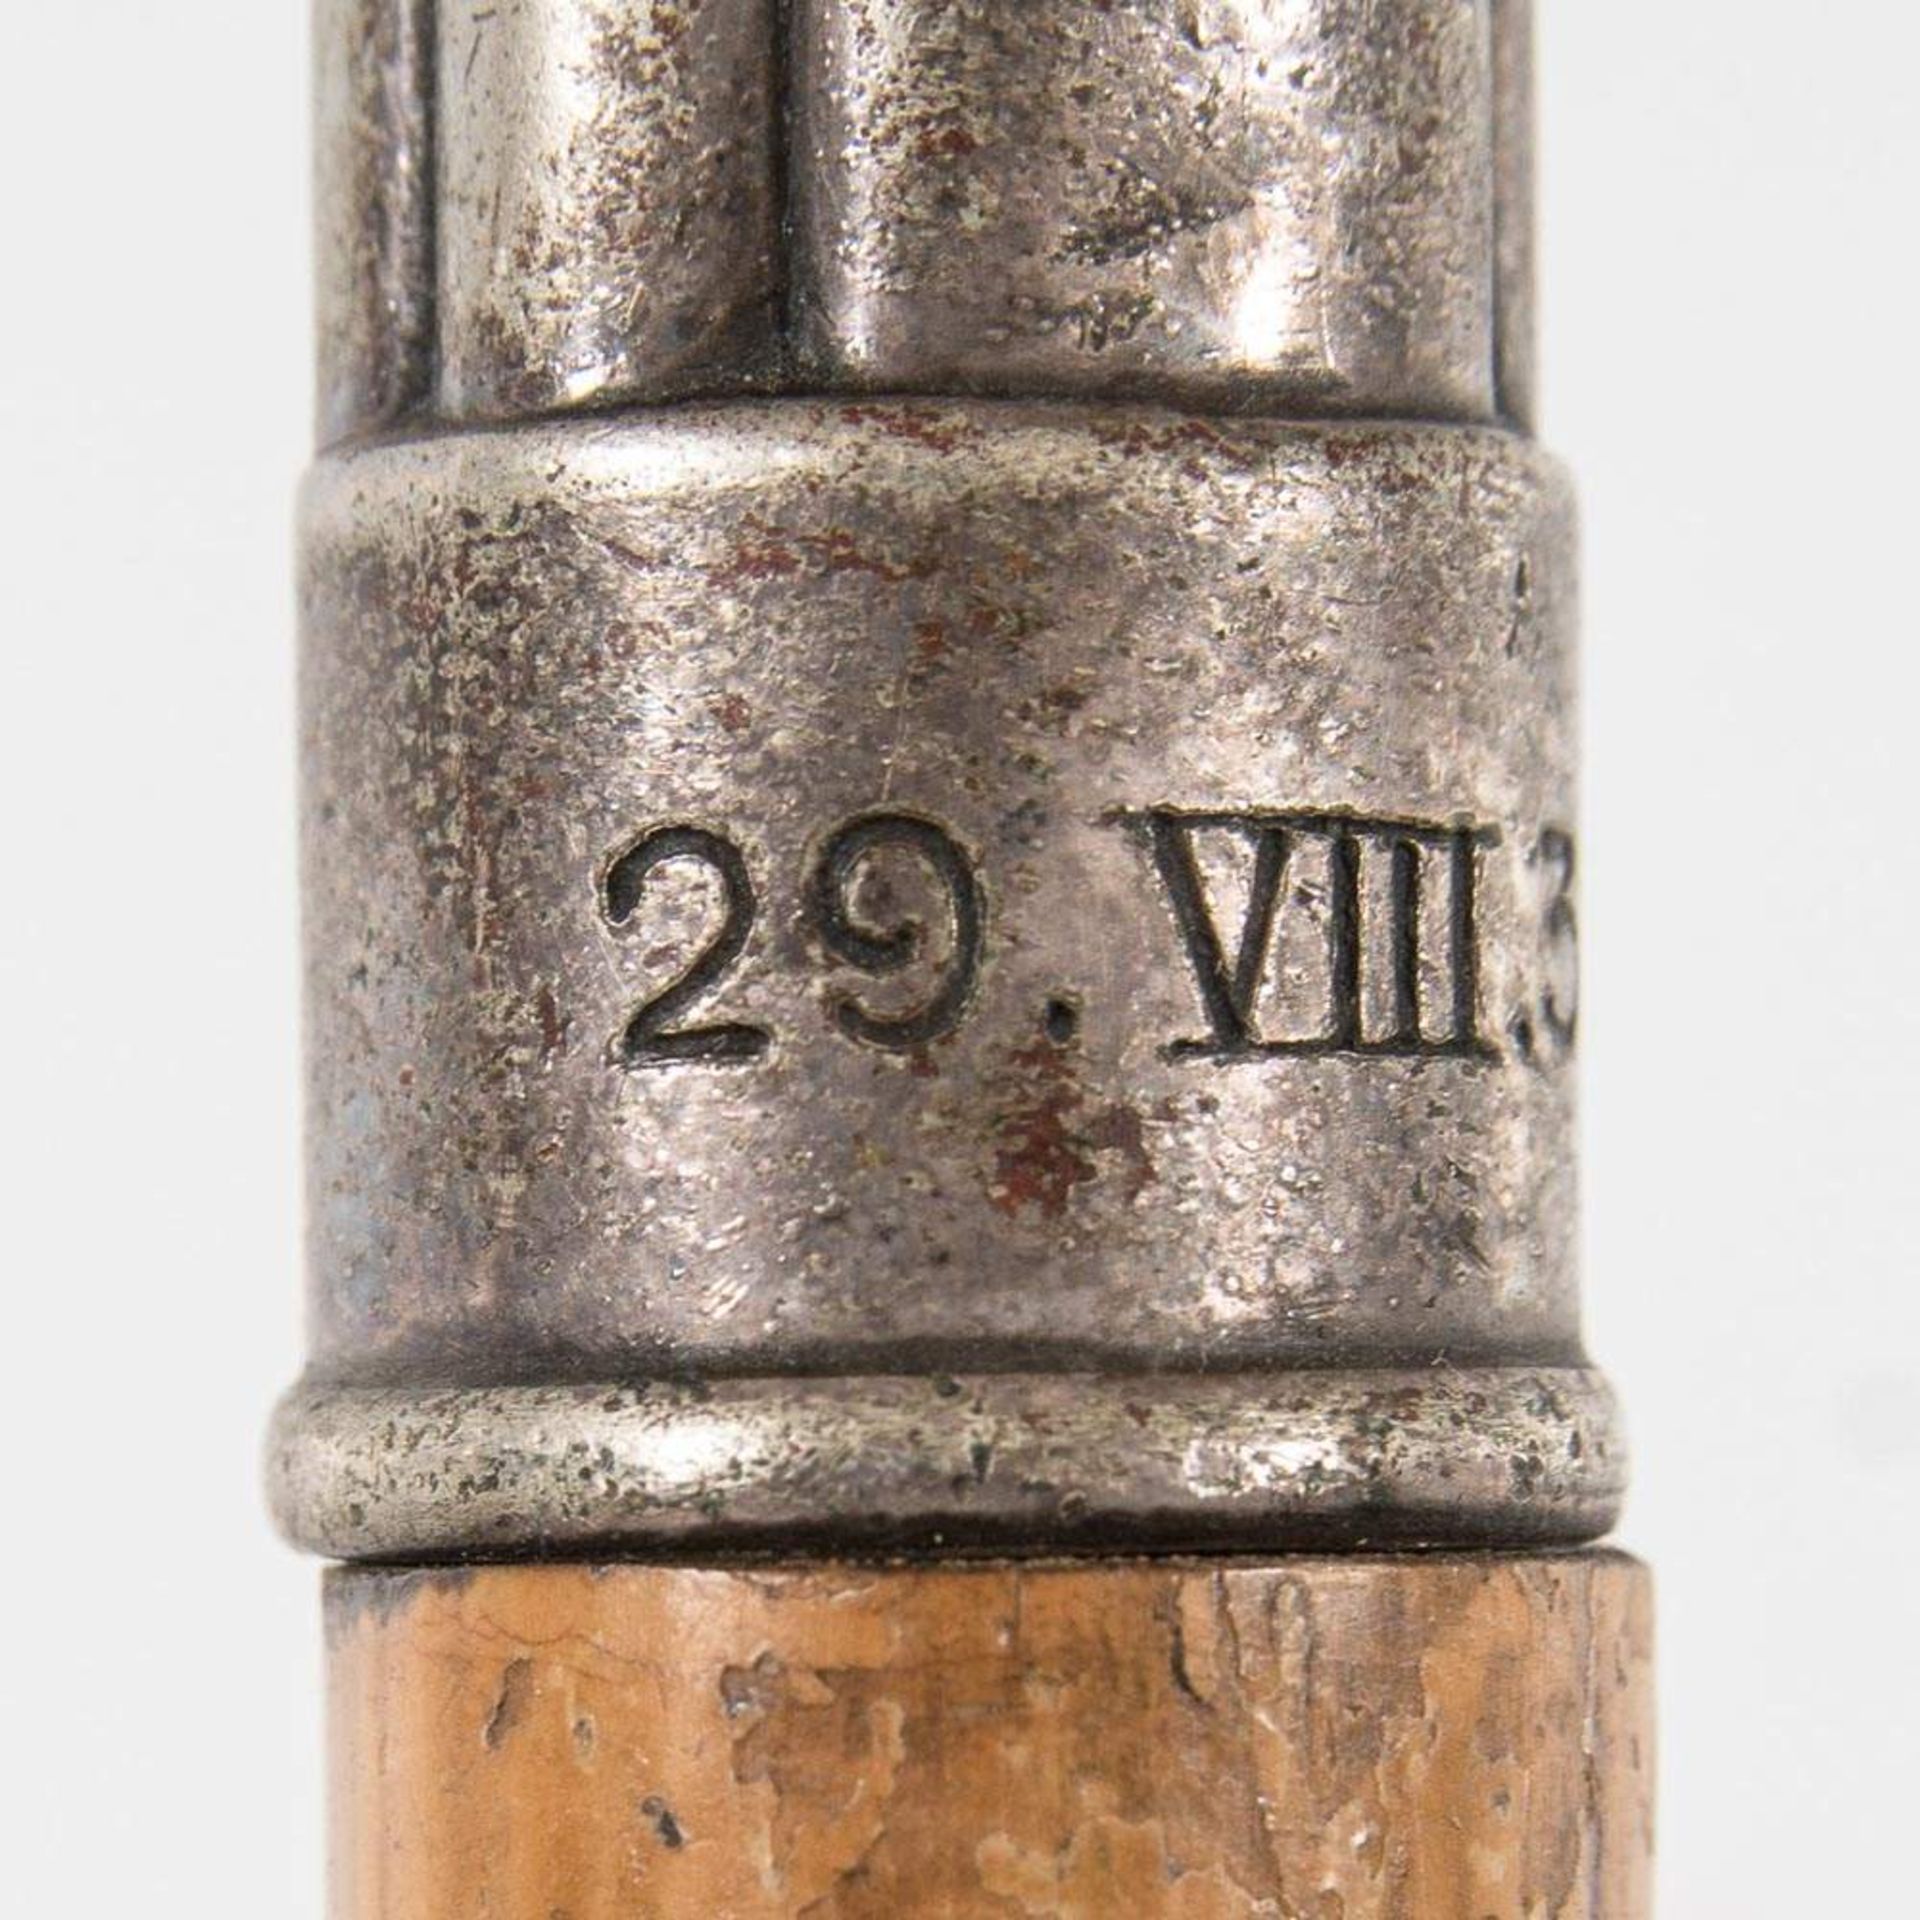 Gehstock. Nickelsilber Griff der WMF (gedellt) datiert 29 VII. (19)35. Gesamtlänge ca. 86 cm. - Image 3 of 7